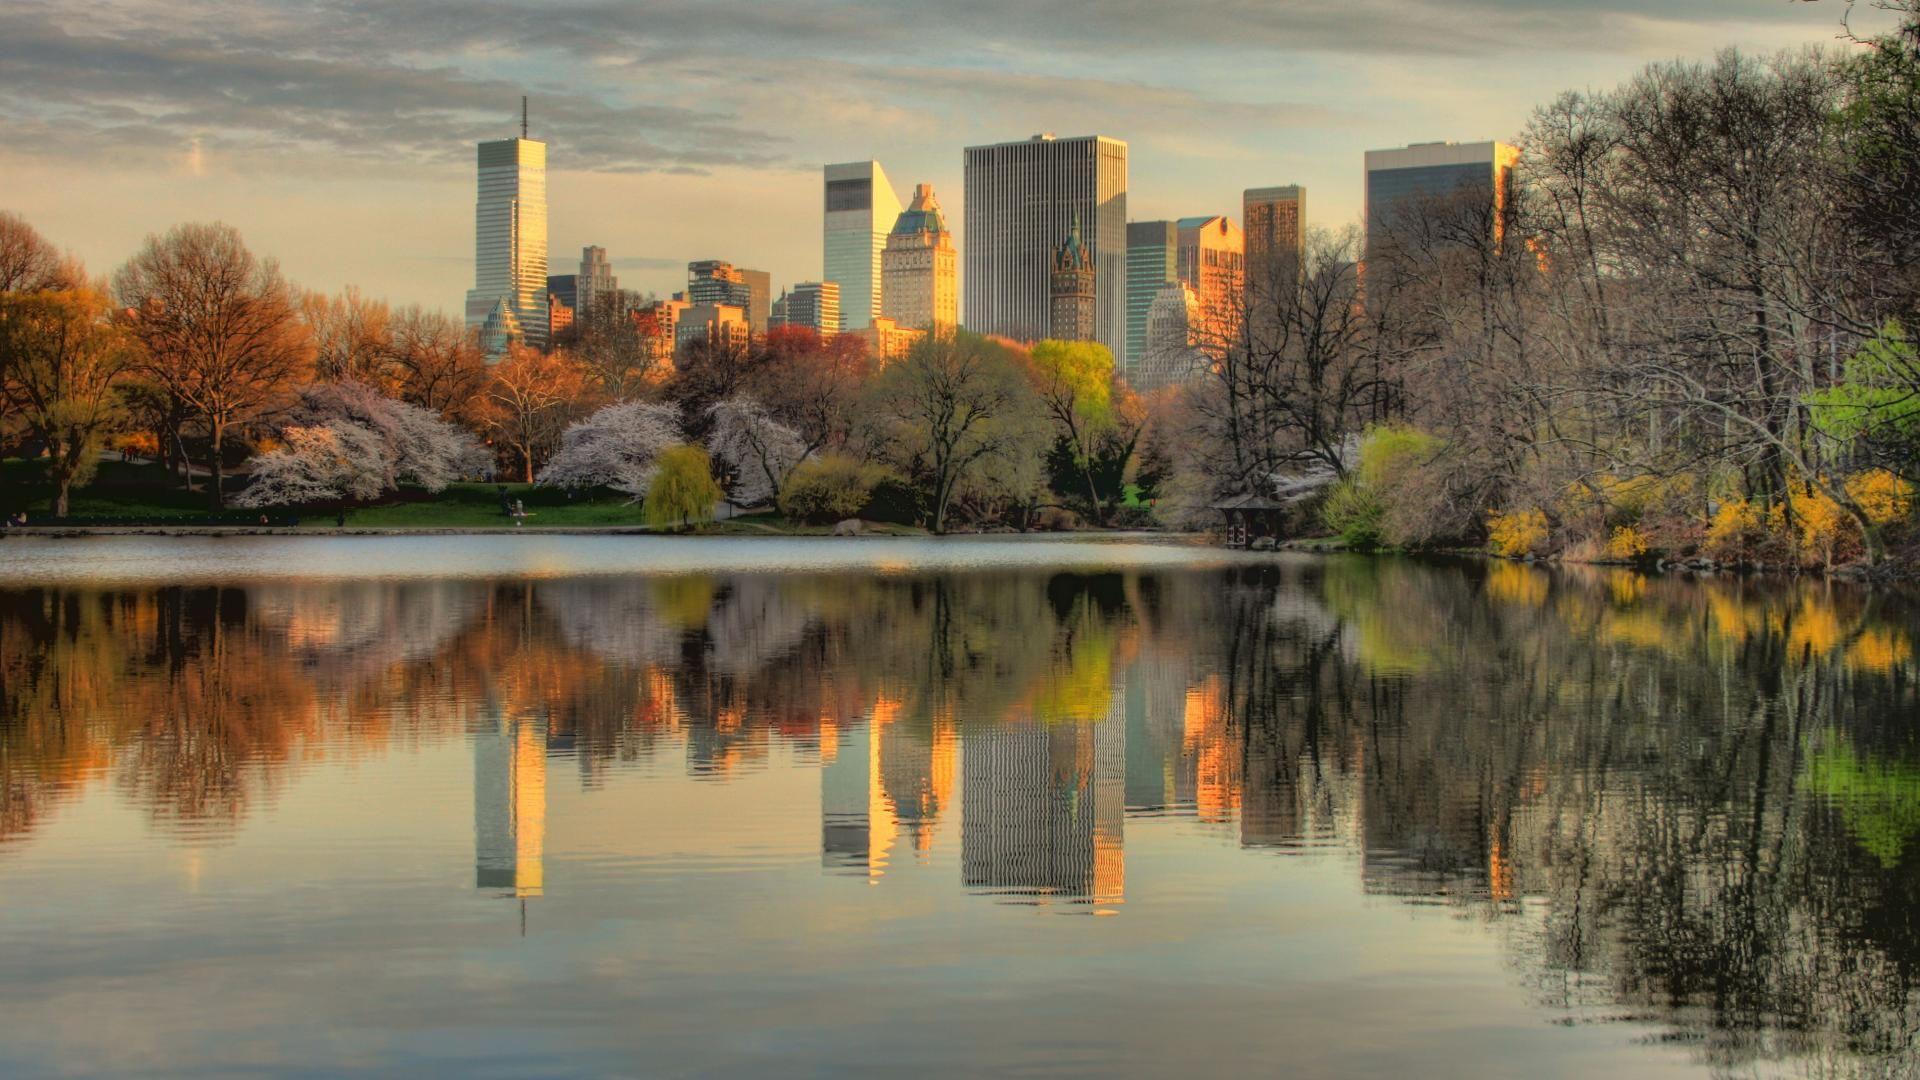 Картинки природы города. Центральный парк Нью-Йорк. Осень в Нью-Йорке Центральный парк. Центральный парк Нью-Йорка фото. Манхэттен централ парк.